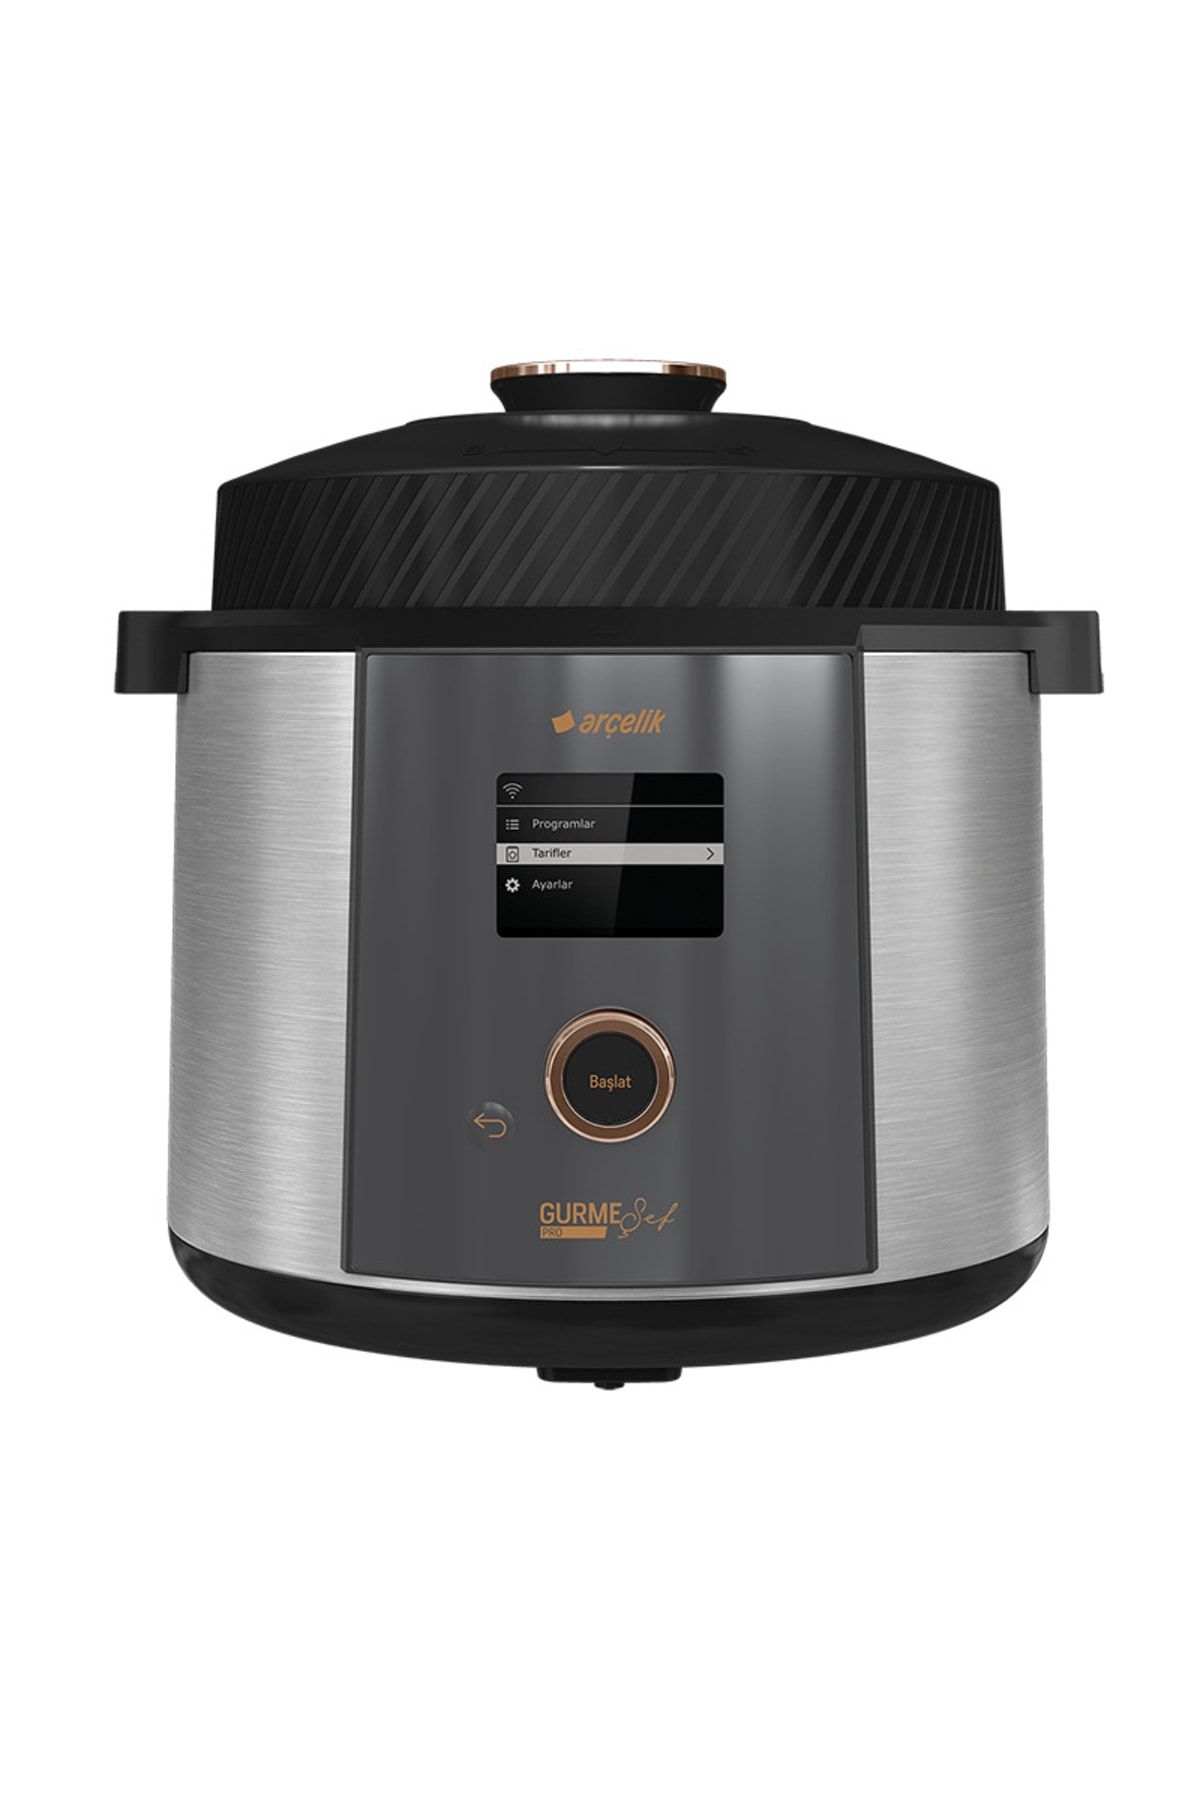 Arçelik Mc 6251 Gurme Şef™ Uyumlu  Pro Çok Amaçlı Pişirici